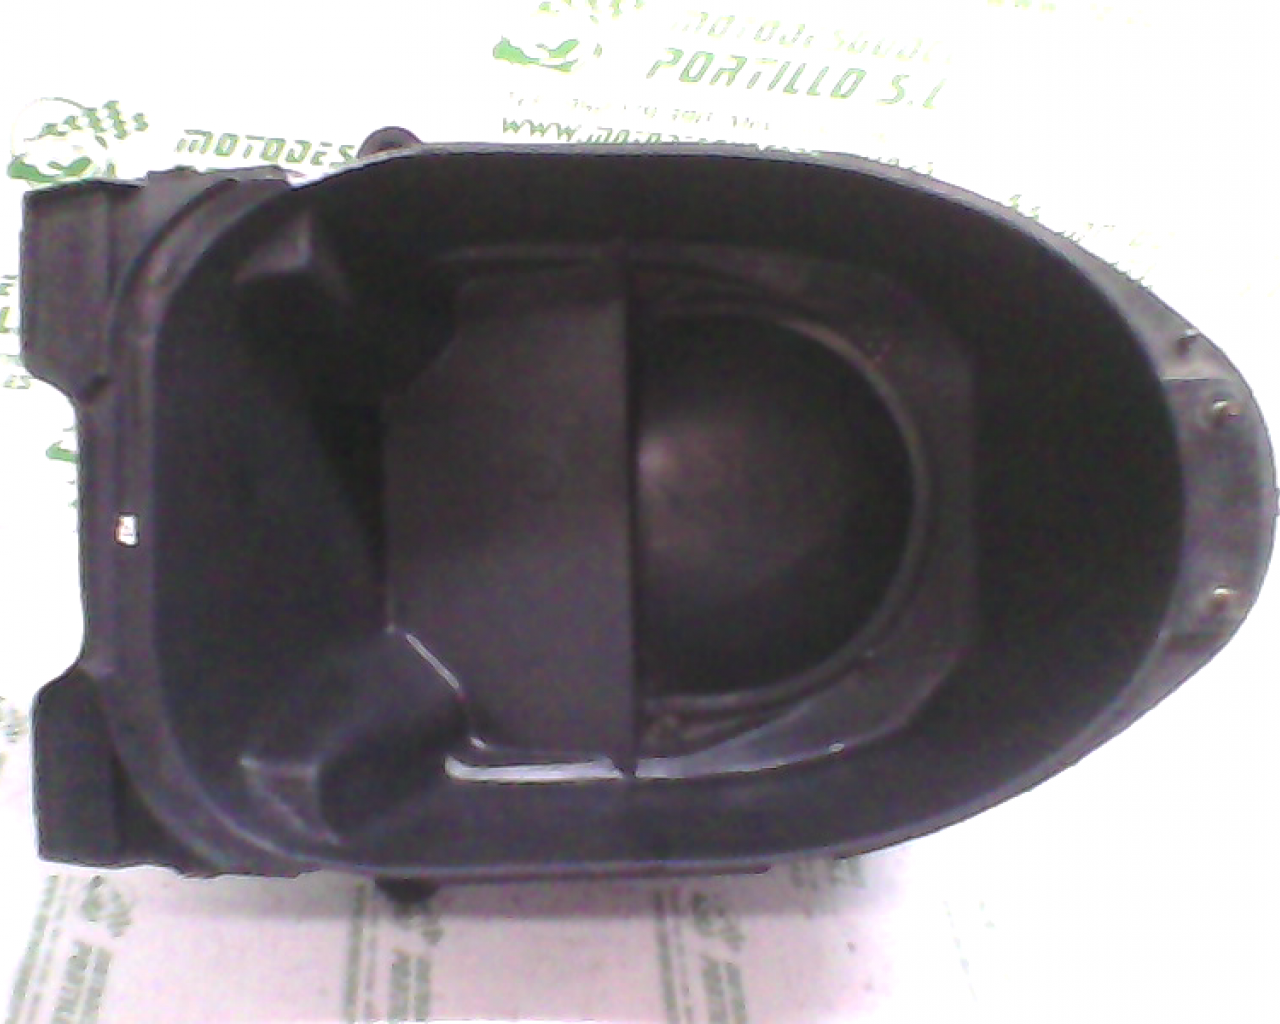 Porta-casco PIONNER QM-125-T (2009-2010)